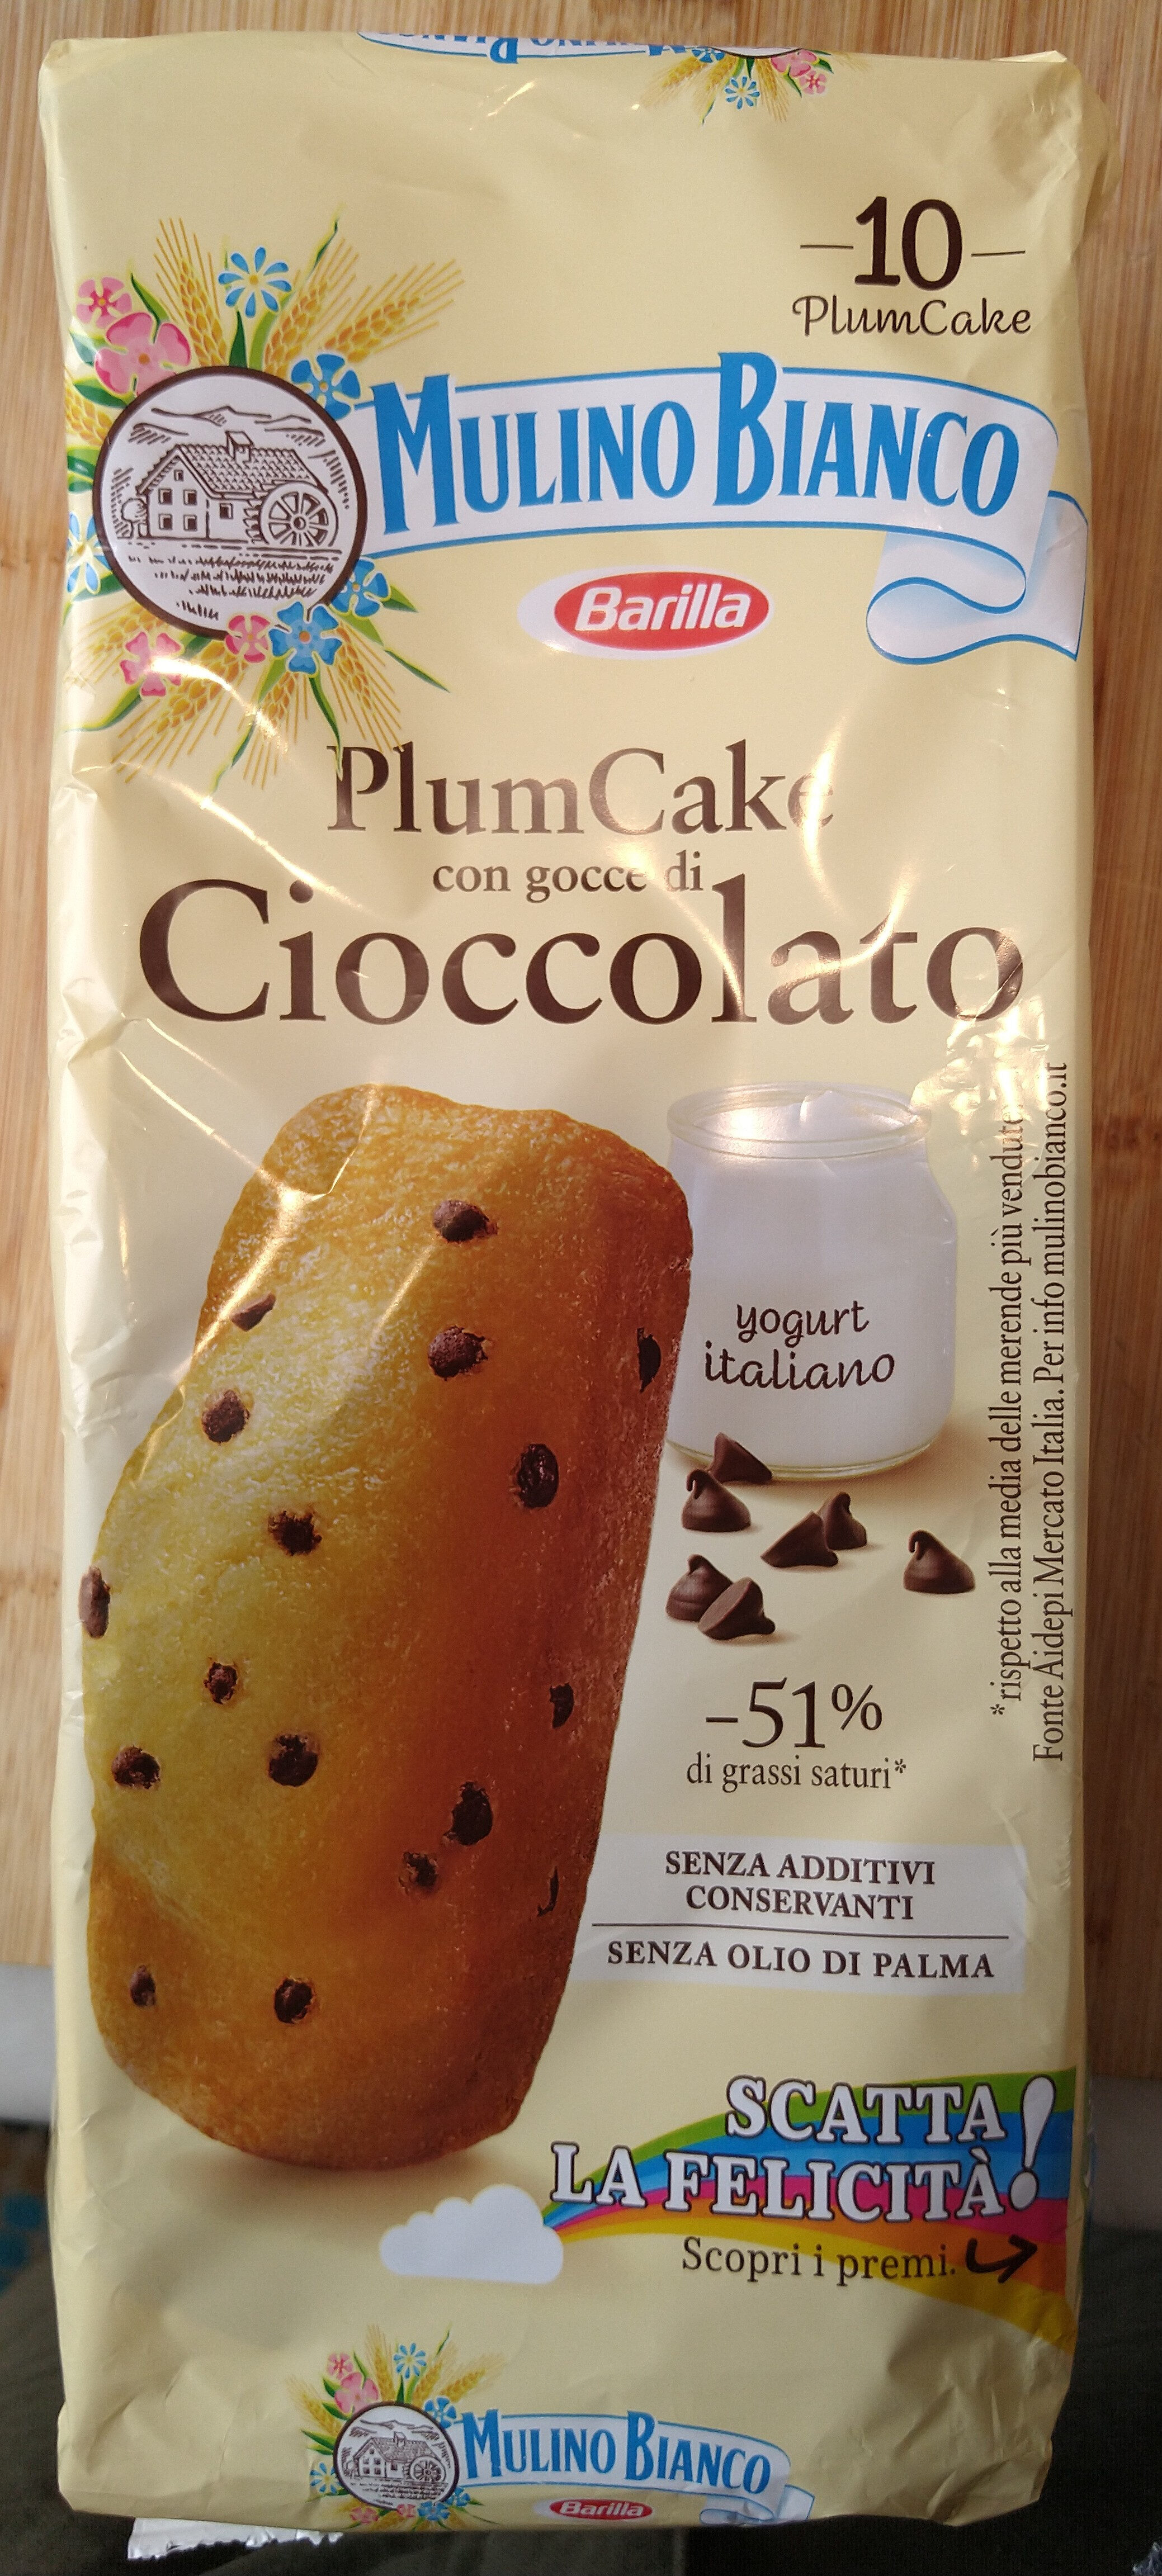 Plumcake con gocce di cioccolato - Producte - it